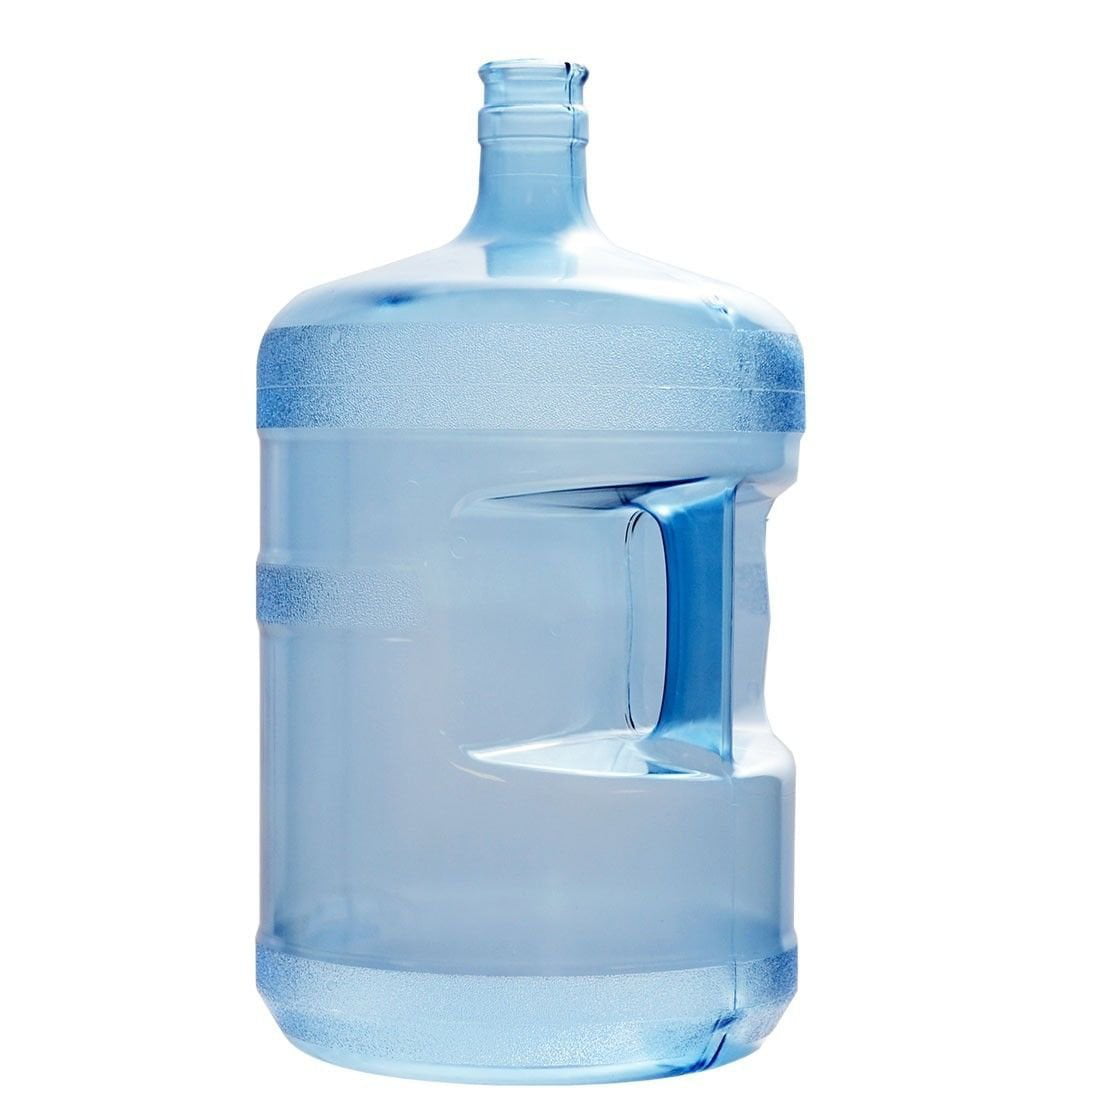 Кулер для воды 20 литров. 5 Gallon Water. Bpa1shsy диспенсер для воды. Бутыль для кулера. Большая бутылка воды.